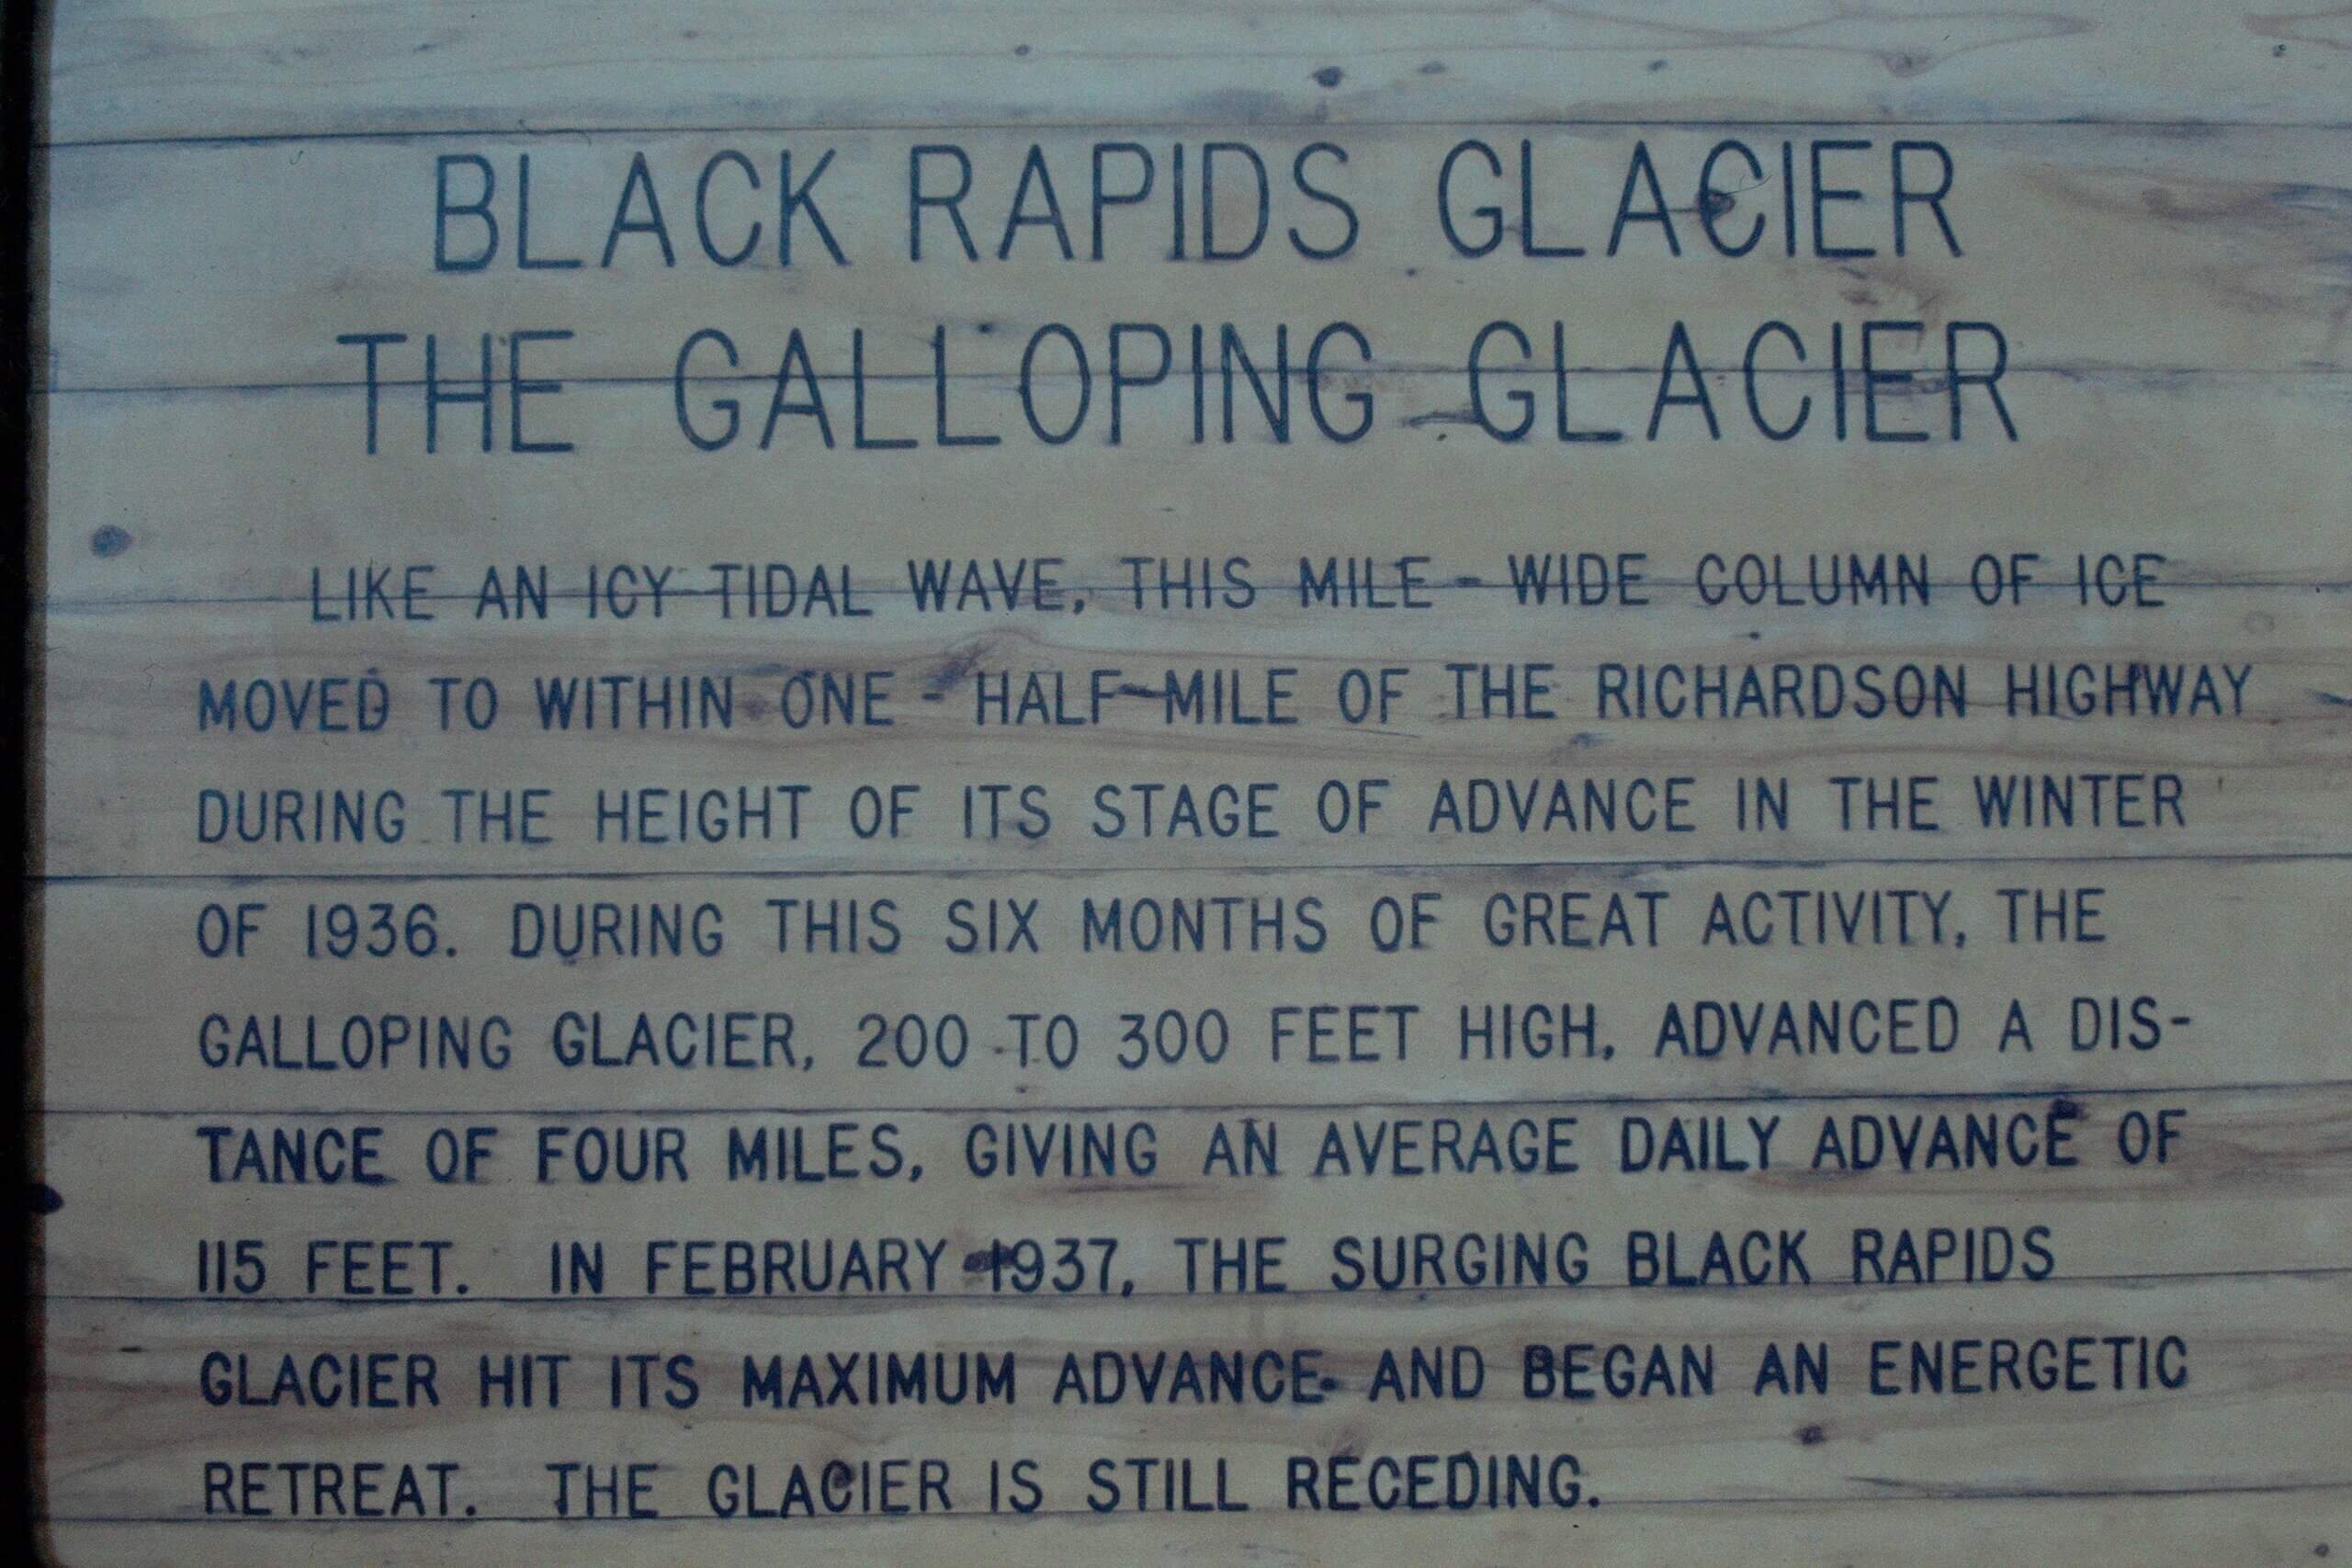 Black Rapids - The galloping glacier